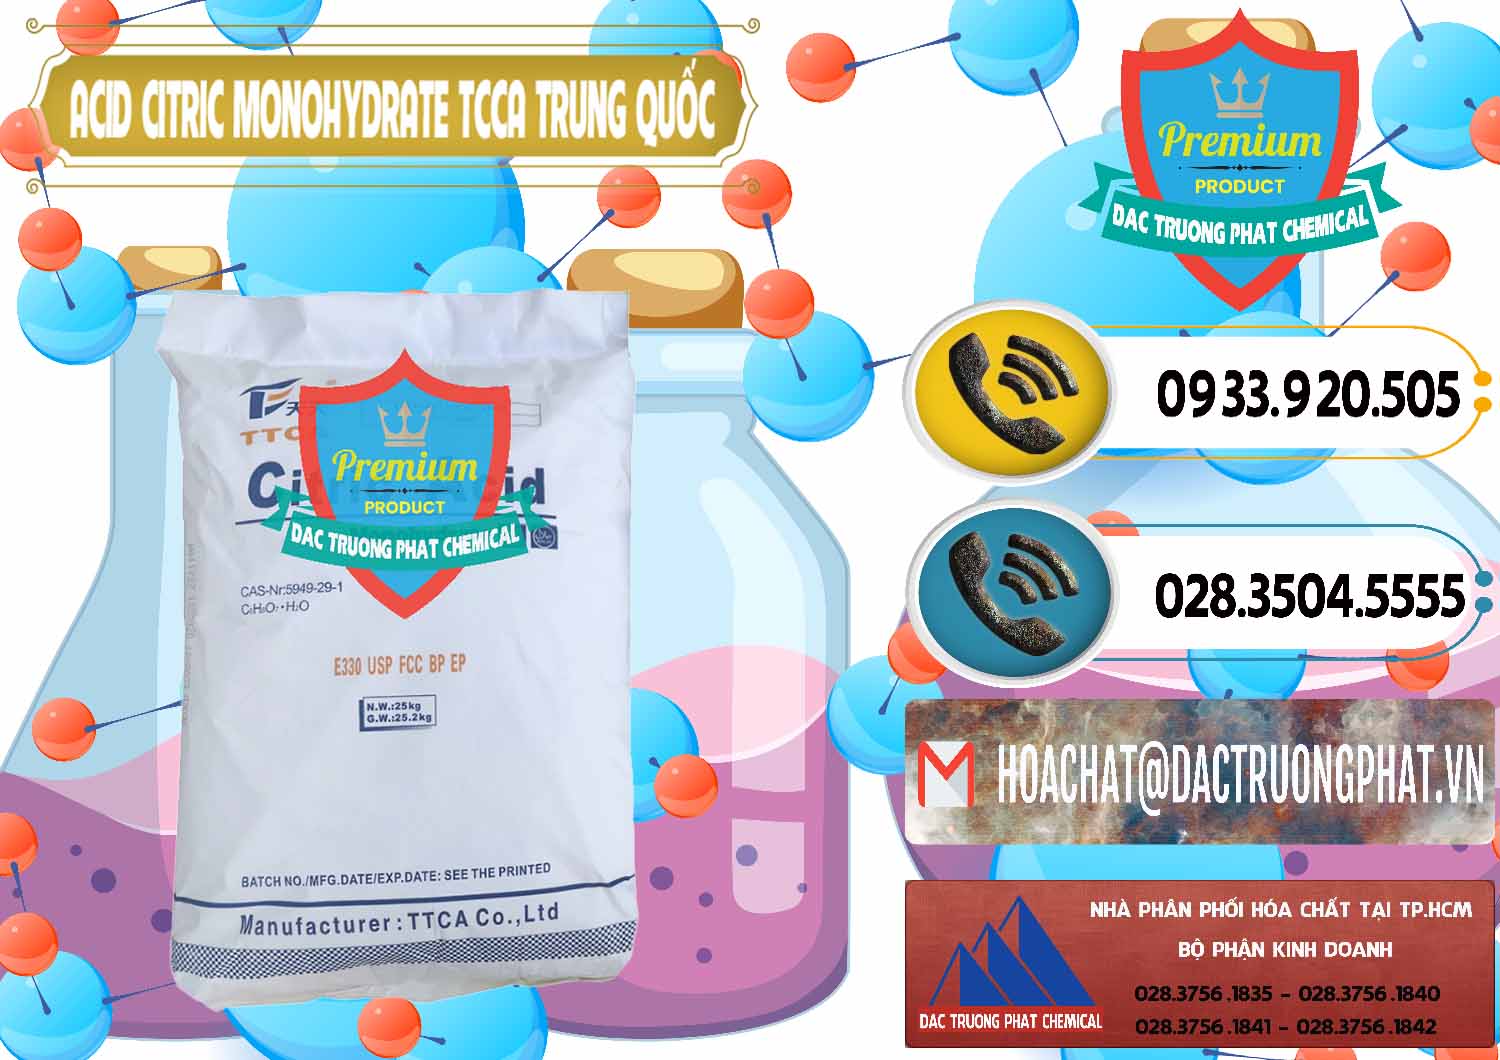 Chuyên bán _ cung ứng Acid Citric - Axit Citric Monohydrate TCCA Trung Quốc China - 0441 - Cty chuyên kinh doanh _ cung cấp hóa chất tại TP.HCM - hoachatdetnhuom.vn